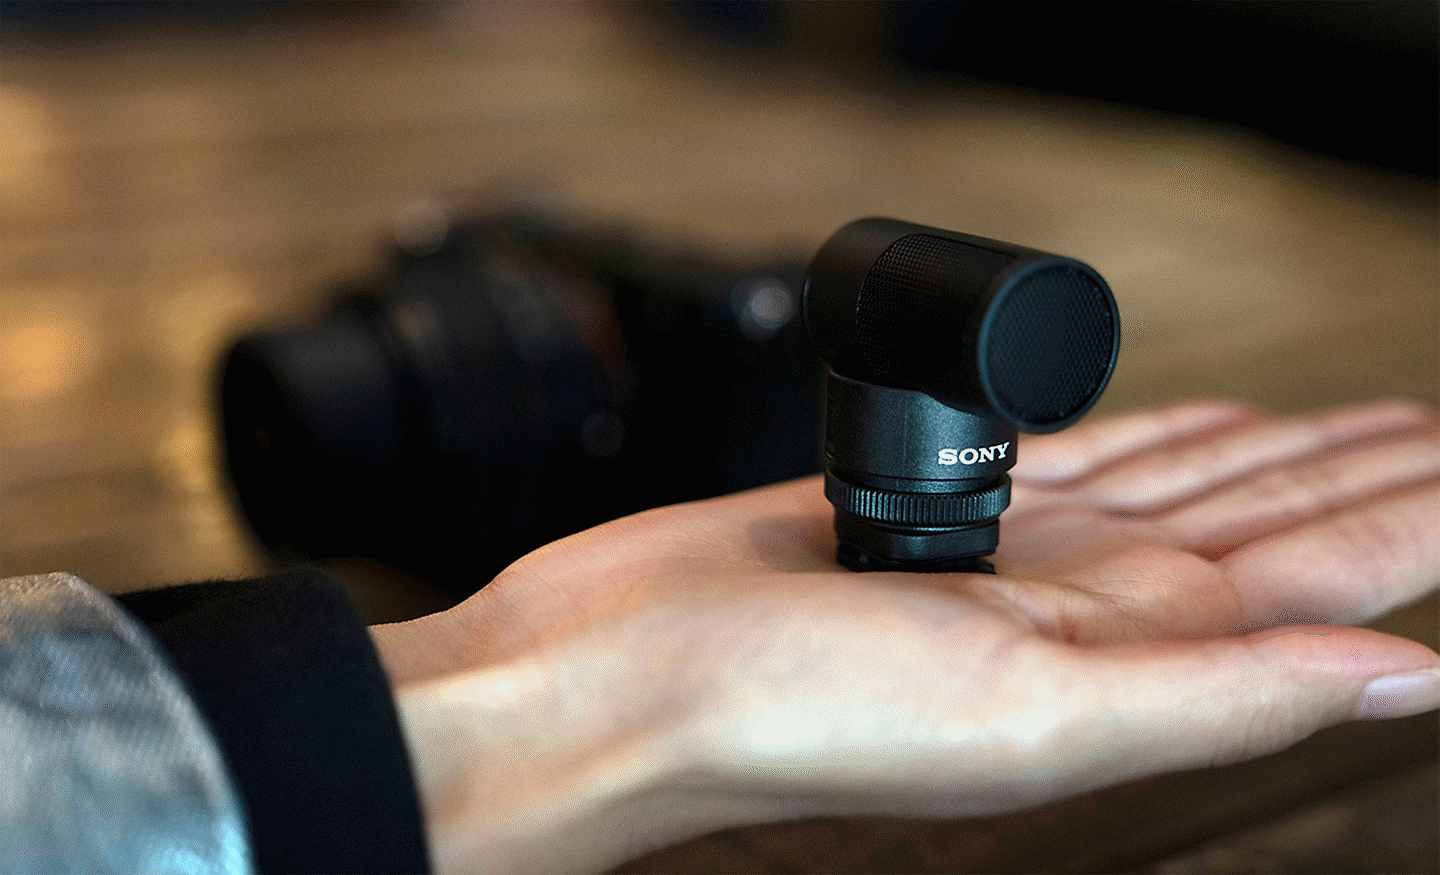 Fotografie mikrofonu ECM-G1, který je dostatečně kompaktní, aby se vešel do jedné ruky.